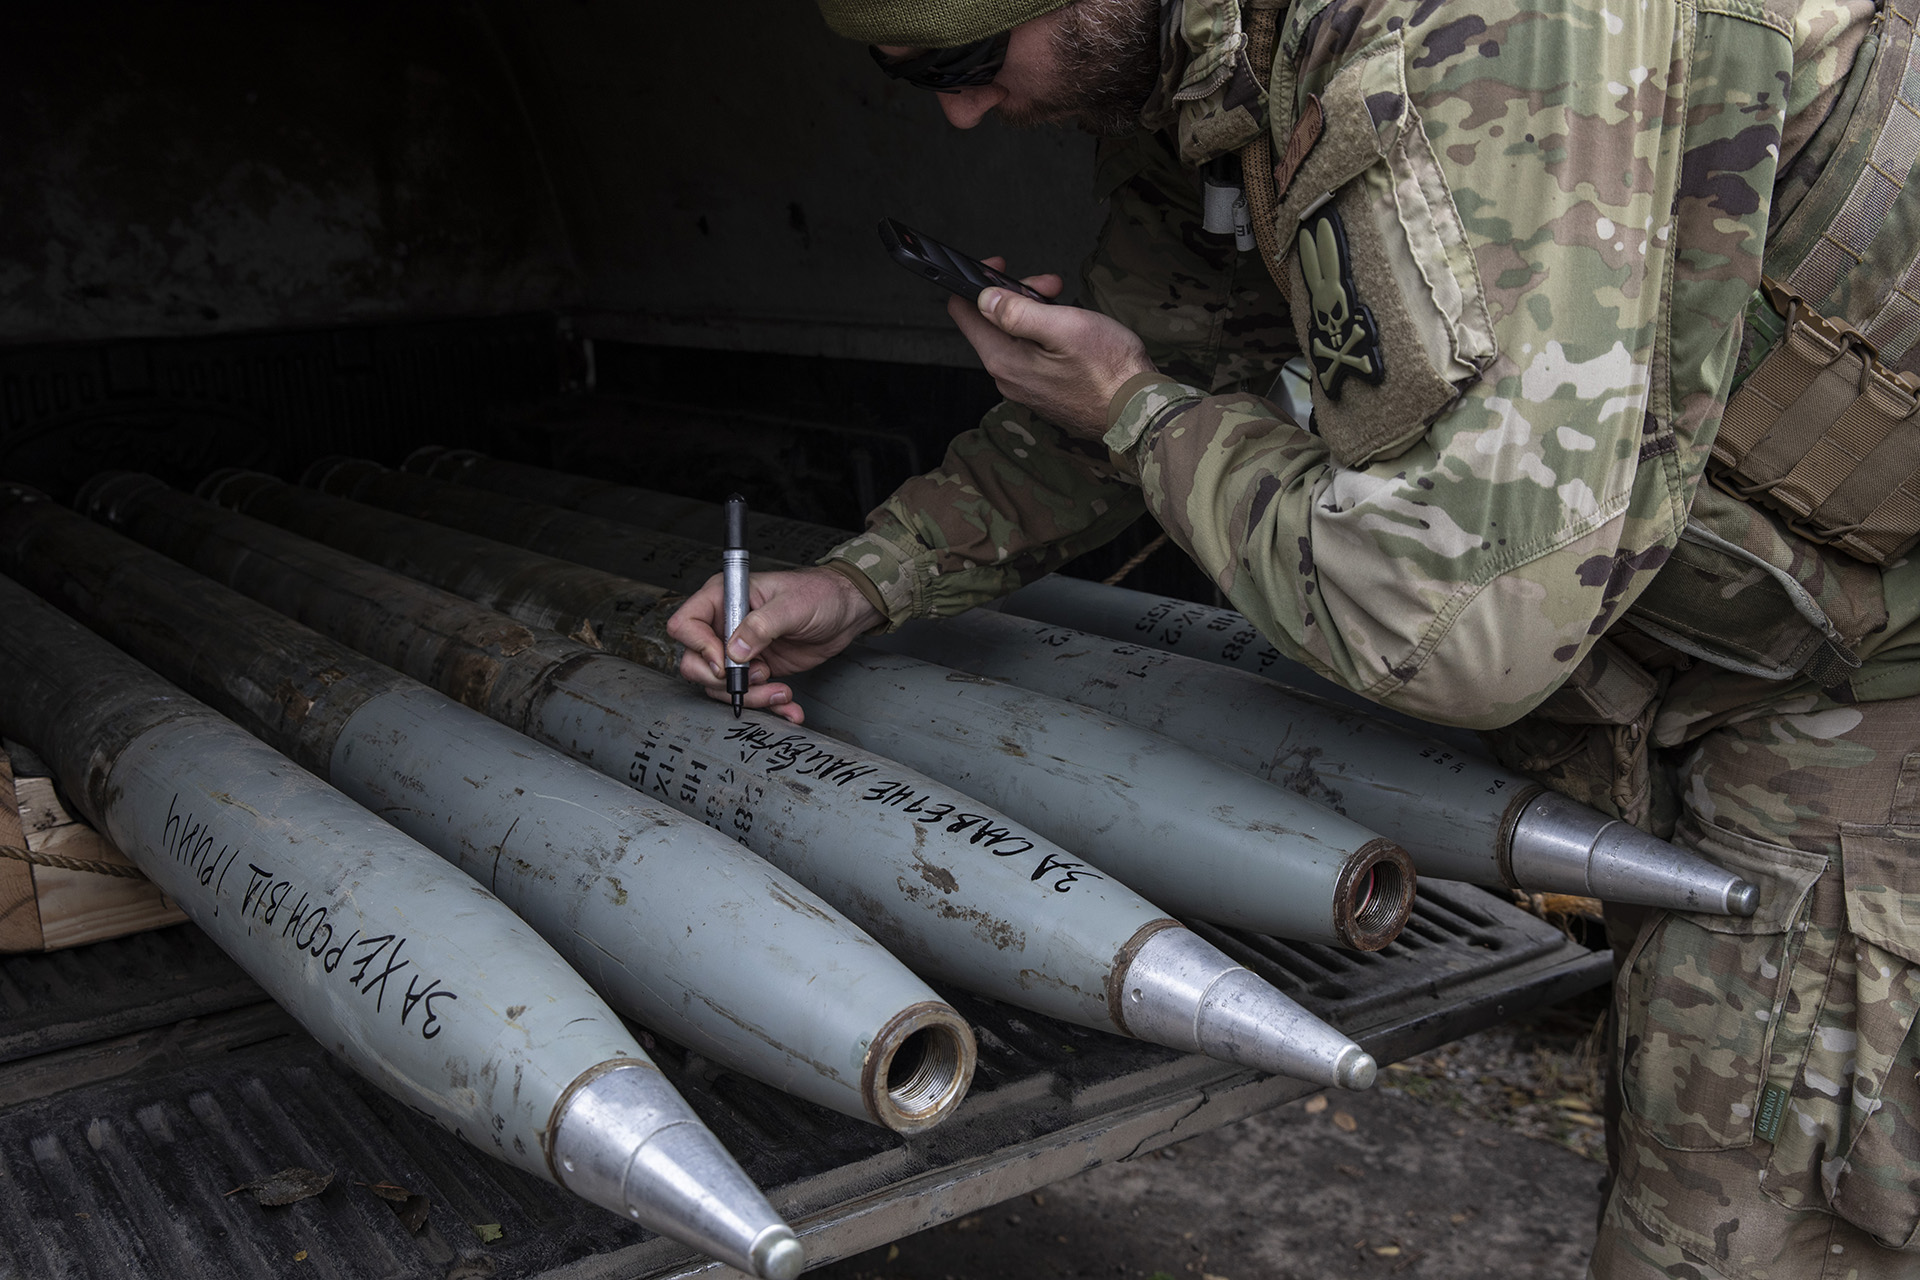 El comandante de la unidad de Karlson, que se hace llamar Playboy, escribió mensajes que incluían "Arde en el infierno", "Ucrania es la única" y "Por el futuro sagrado de Ucrania" en municiones